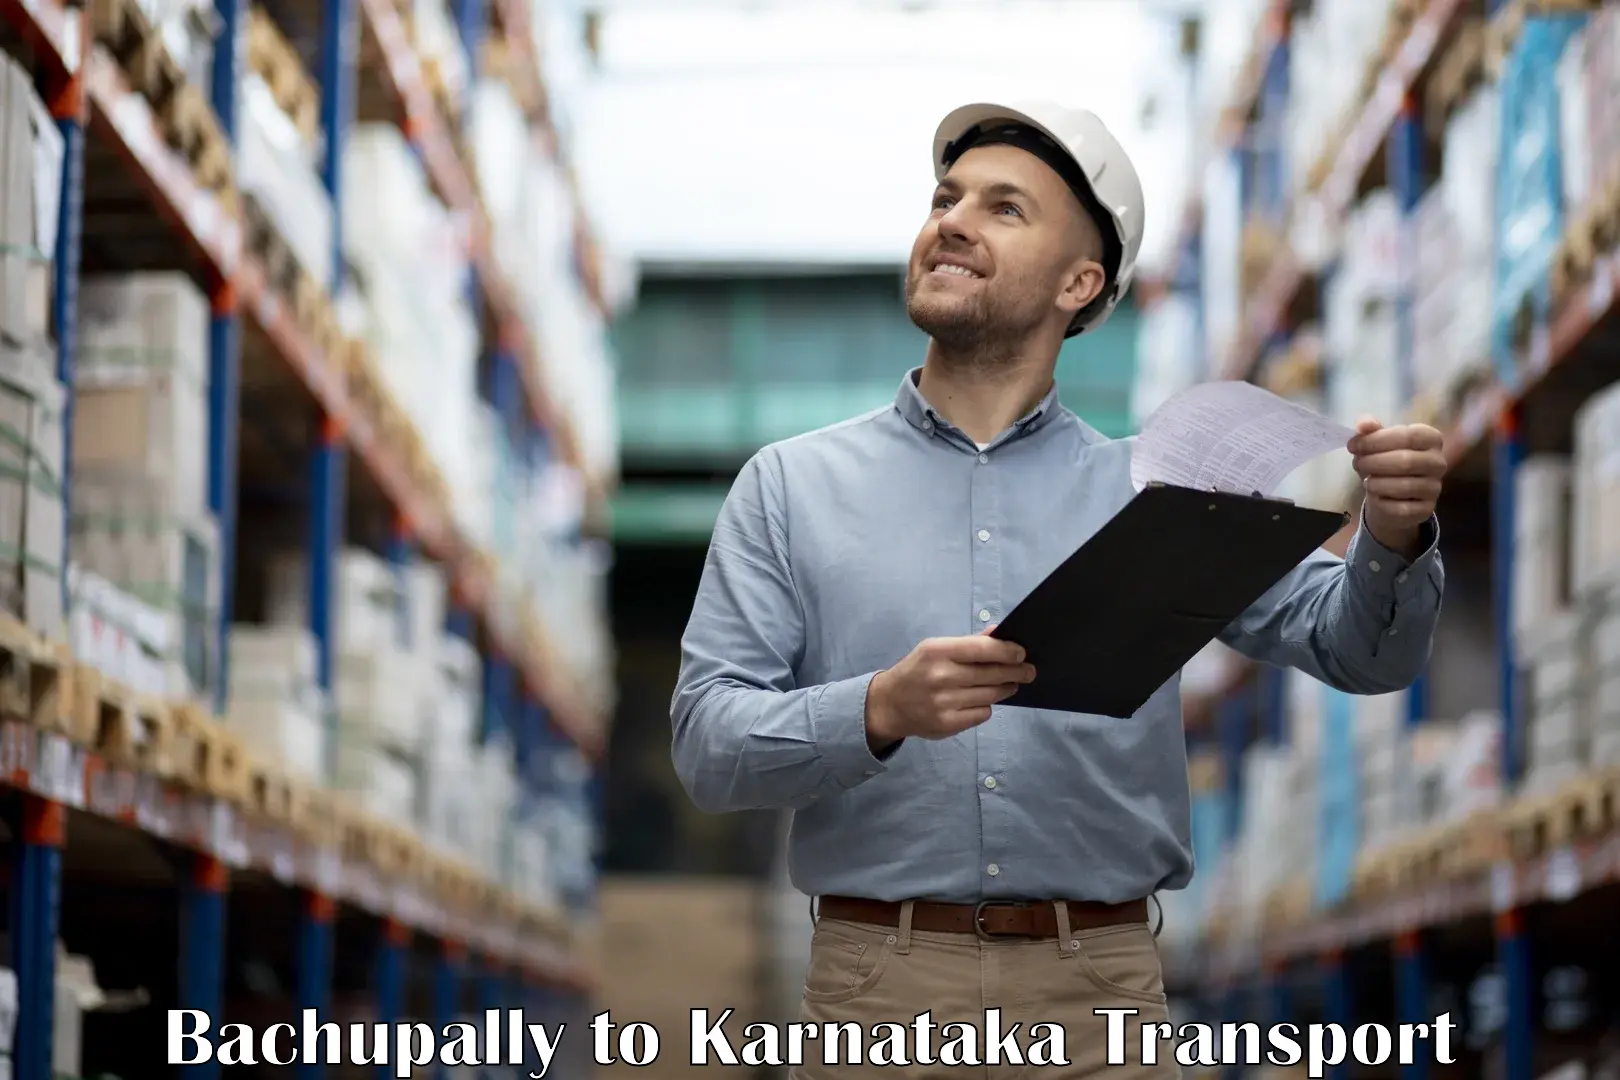 Nearest transport service Bachupally to Kolar